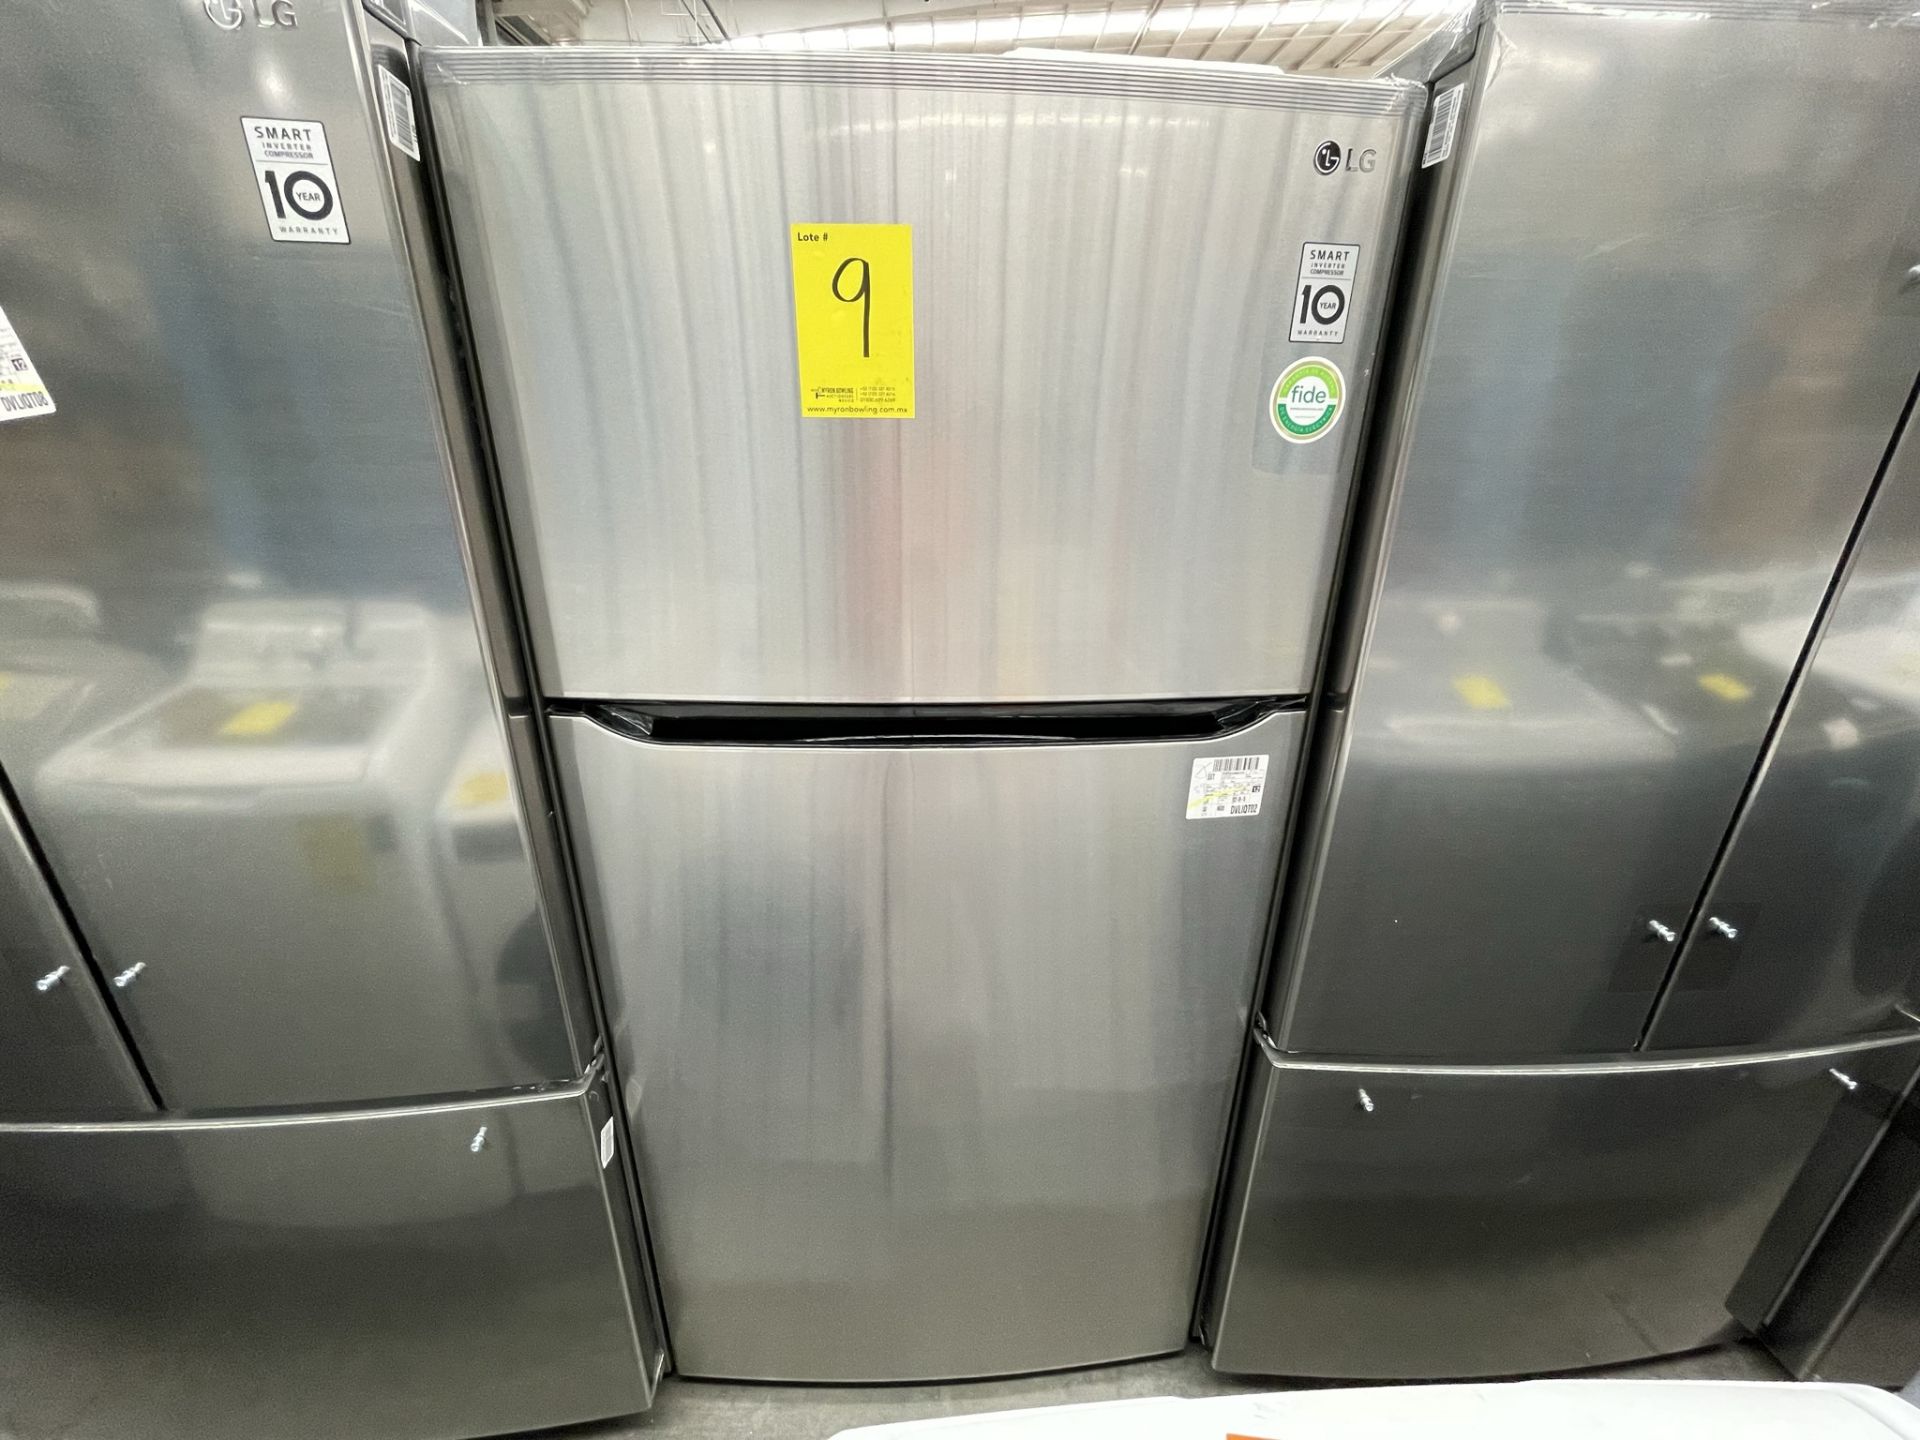 (EQUIPO NUEVO) 1 Refrigerador Marca LG, Modelo GT24BS, Serie V1C601, Color GRIS, LB-619781; (Nuevo,